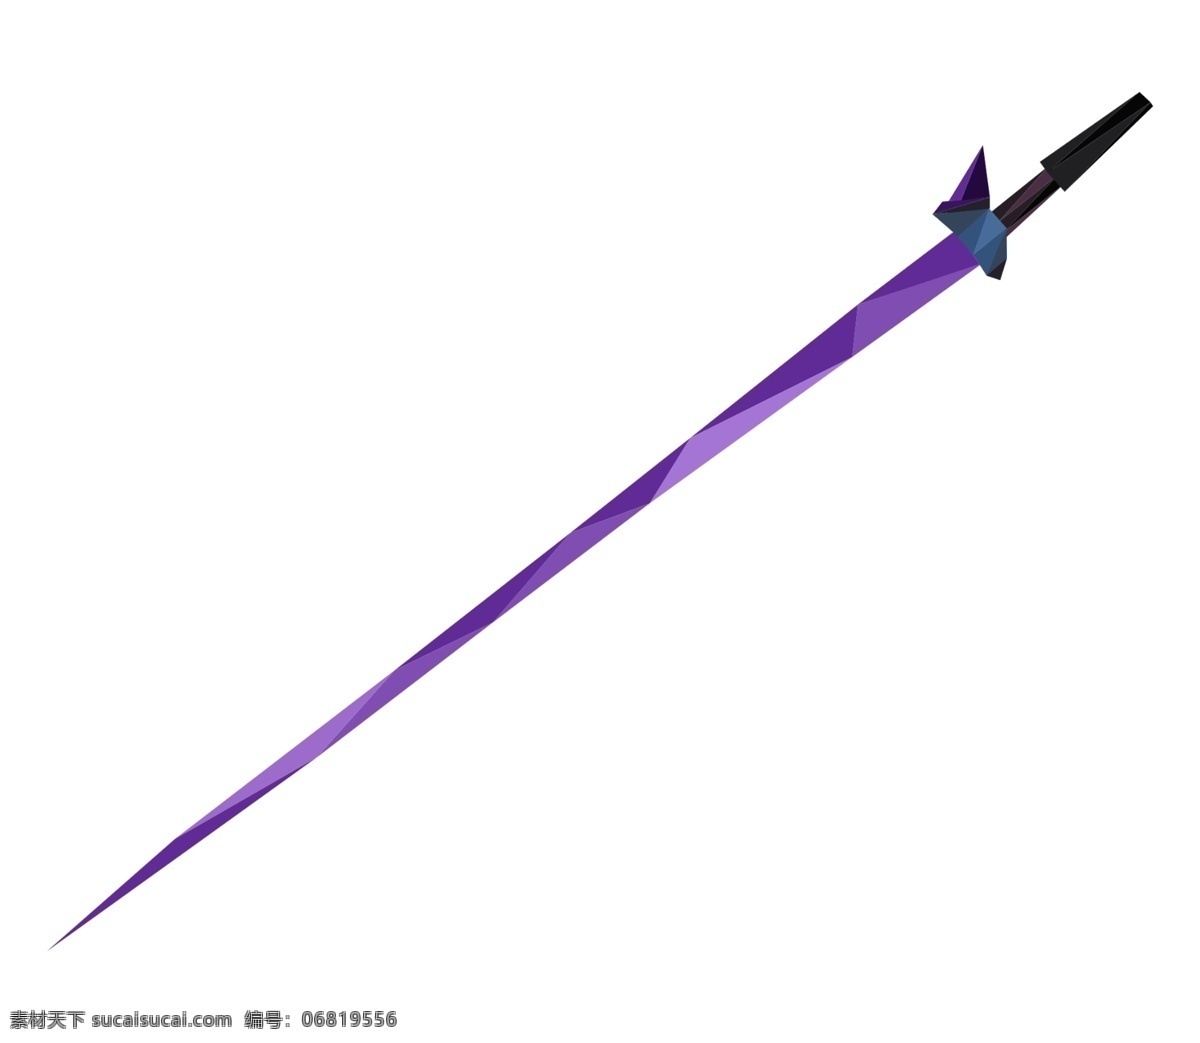 紫色长剑兵器 紫色长剑 兵器 刀剑